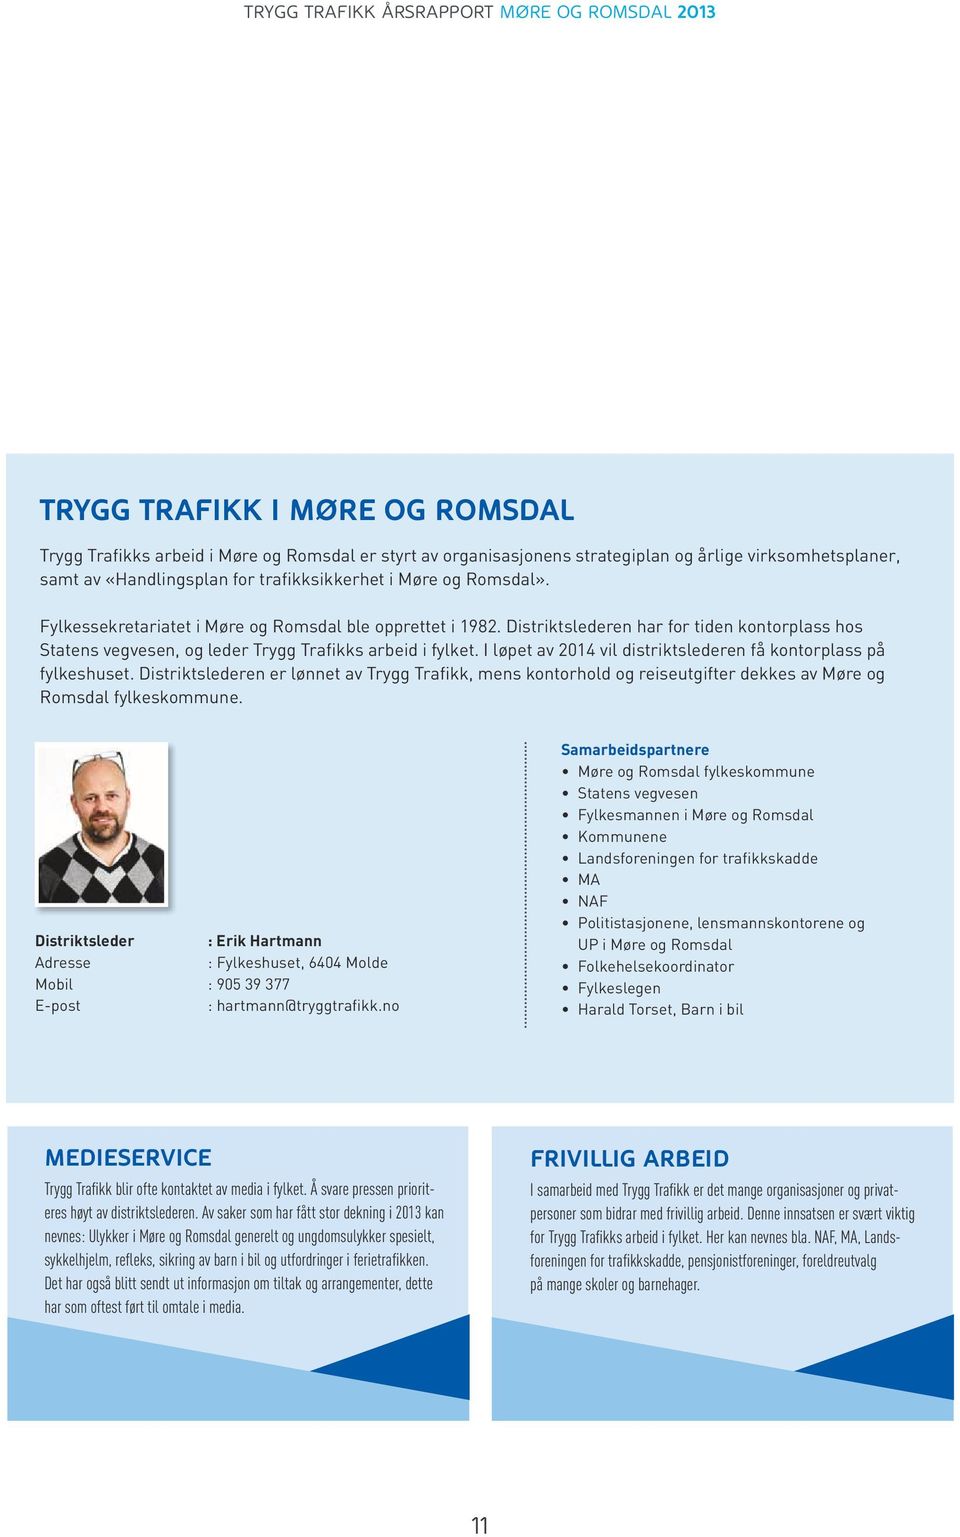 I løpet av 2014 vil distriktslederen få kontorplass på fylkeshuset. Distriktslederen er lønnet av Trygg Trafikk, mens kontorhold og reiseutgifter dekkes av Møre og Romsdal fylkeskommune.